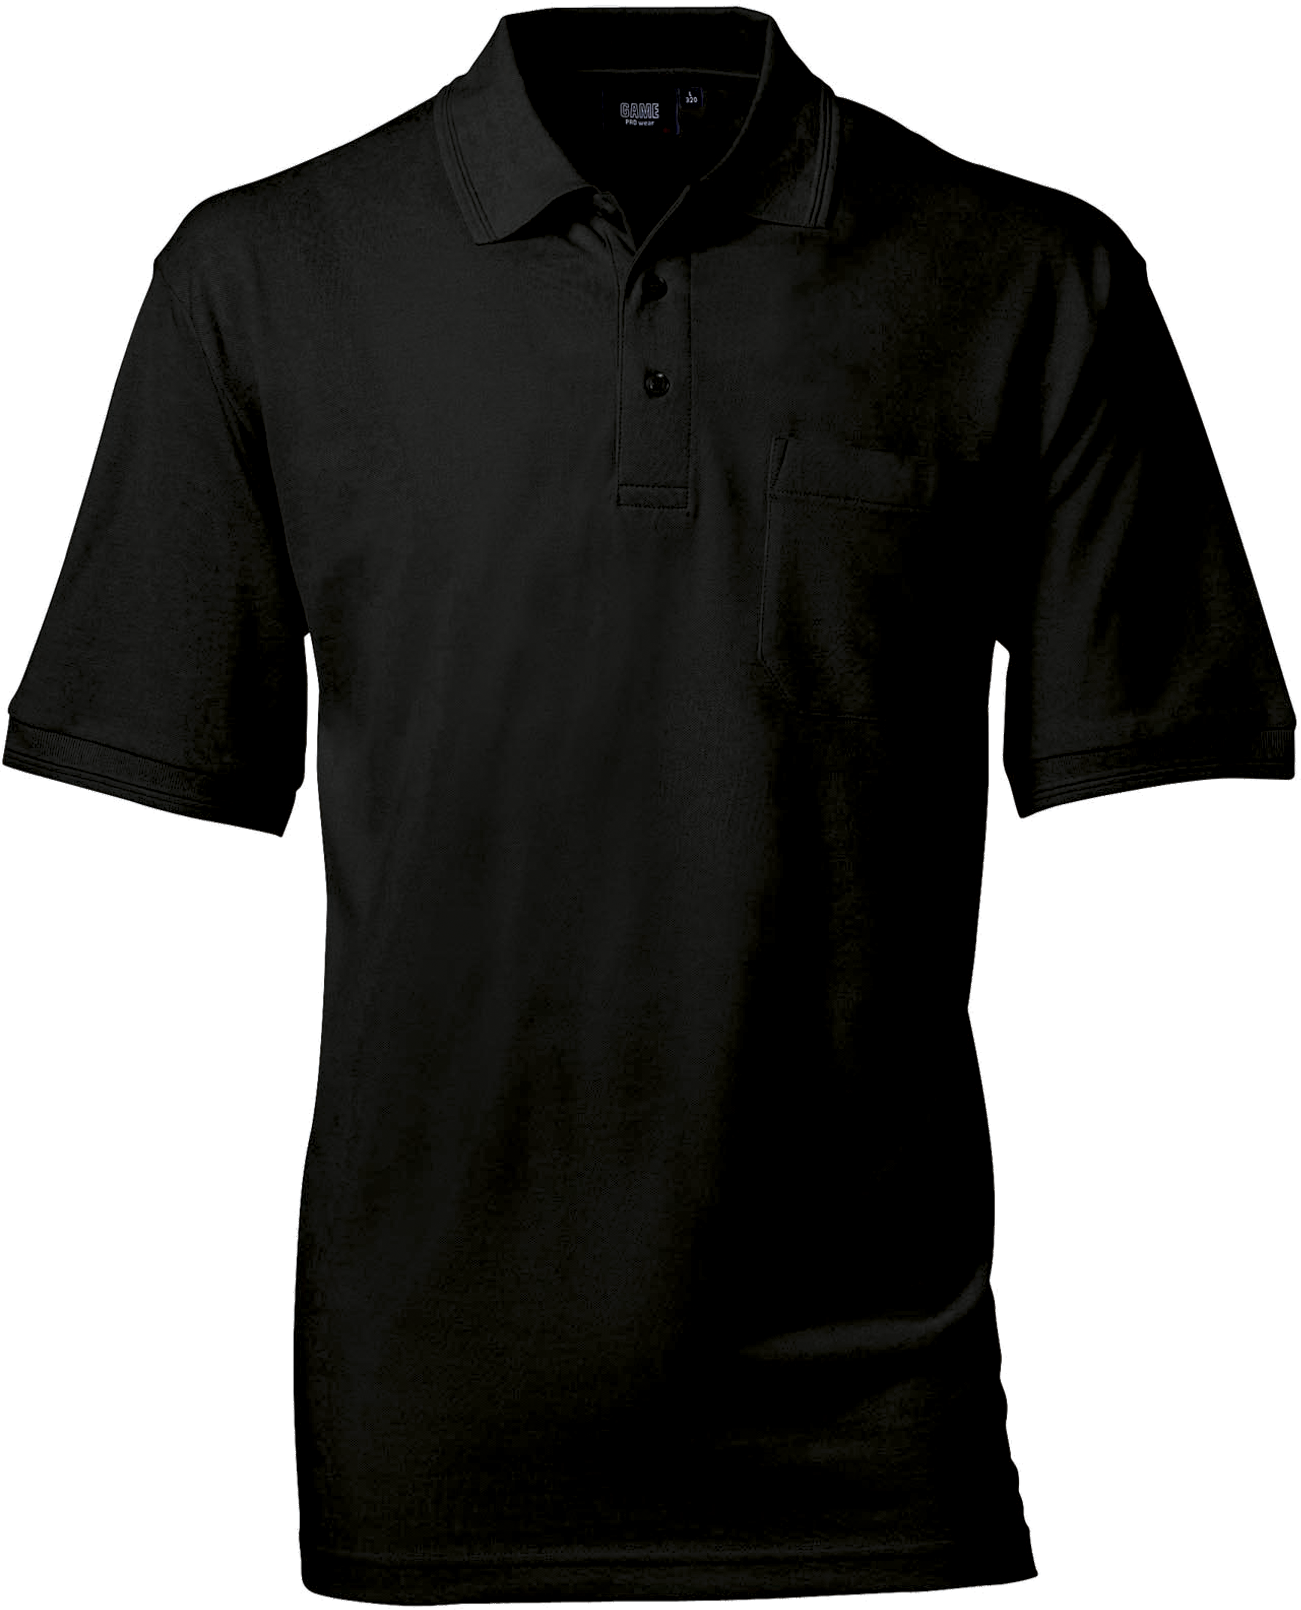 Schwarz Herren Polo Shirt m. Brusttasche, Prowear (8250281)